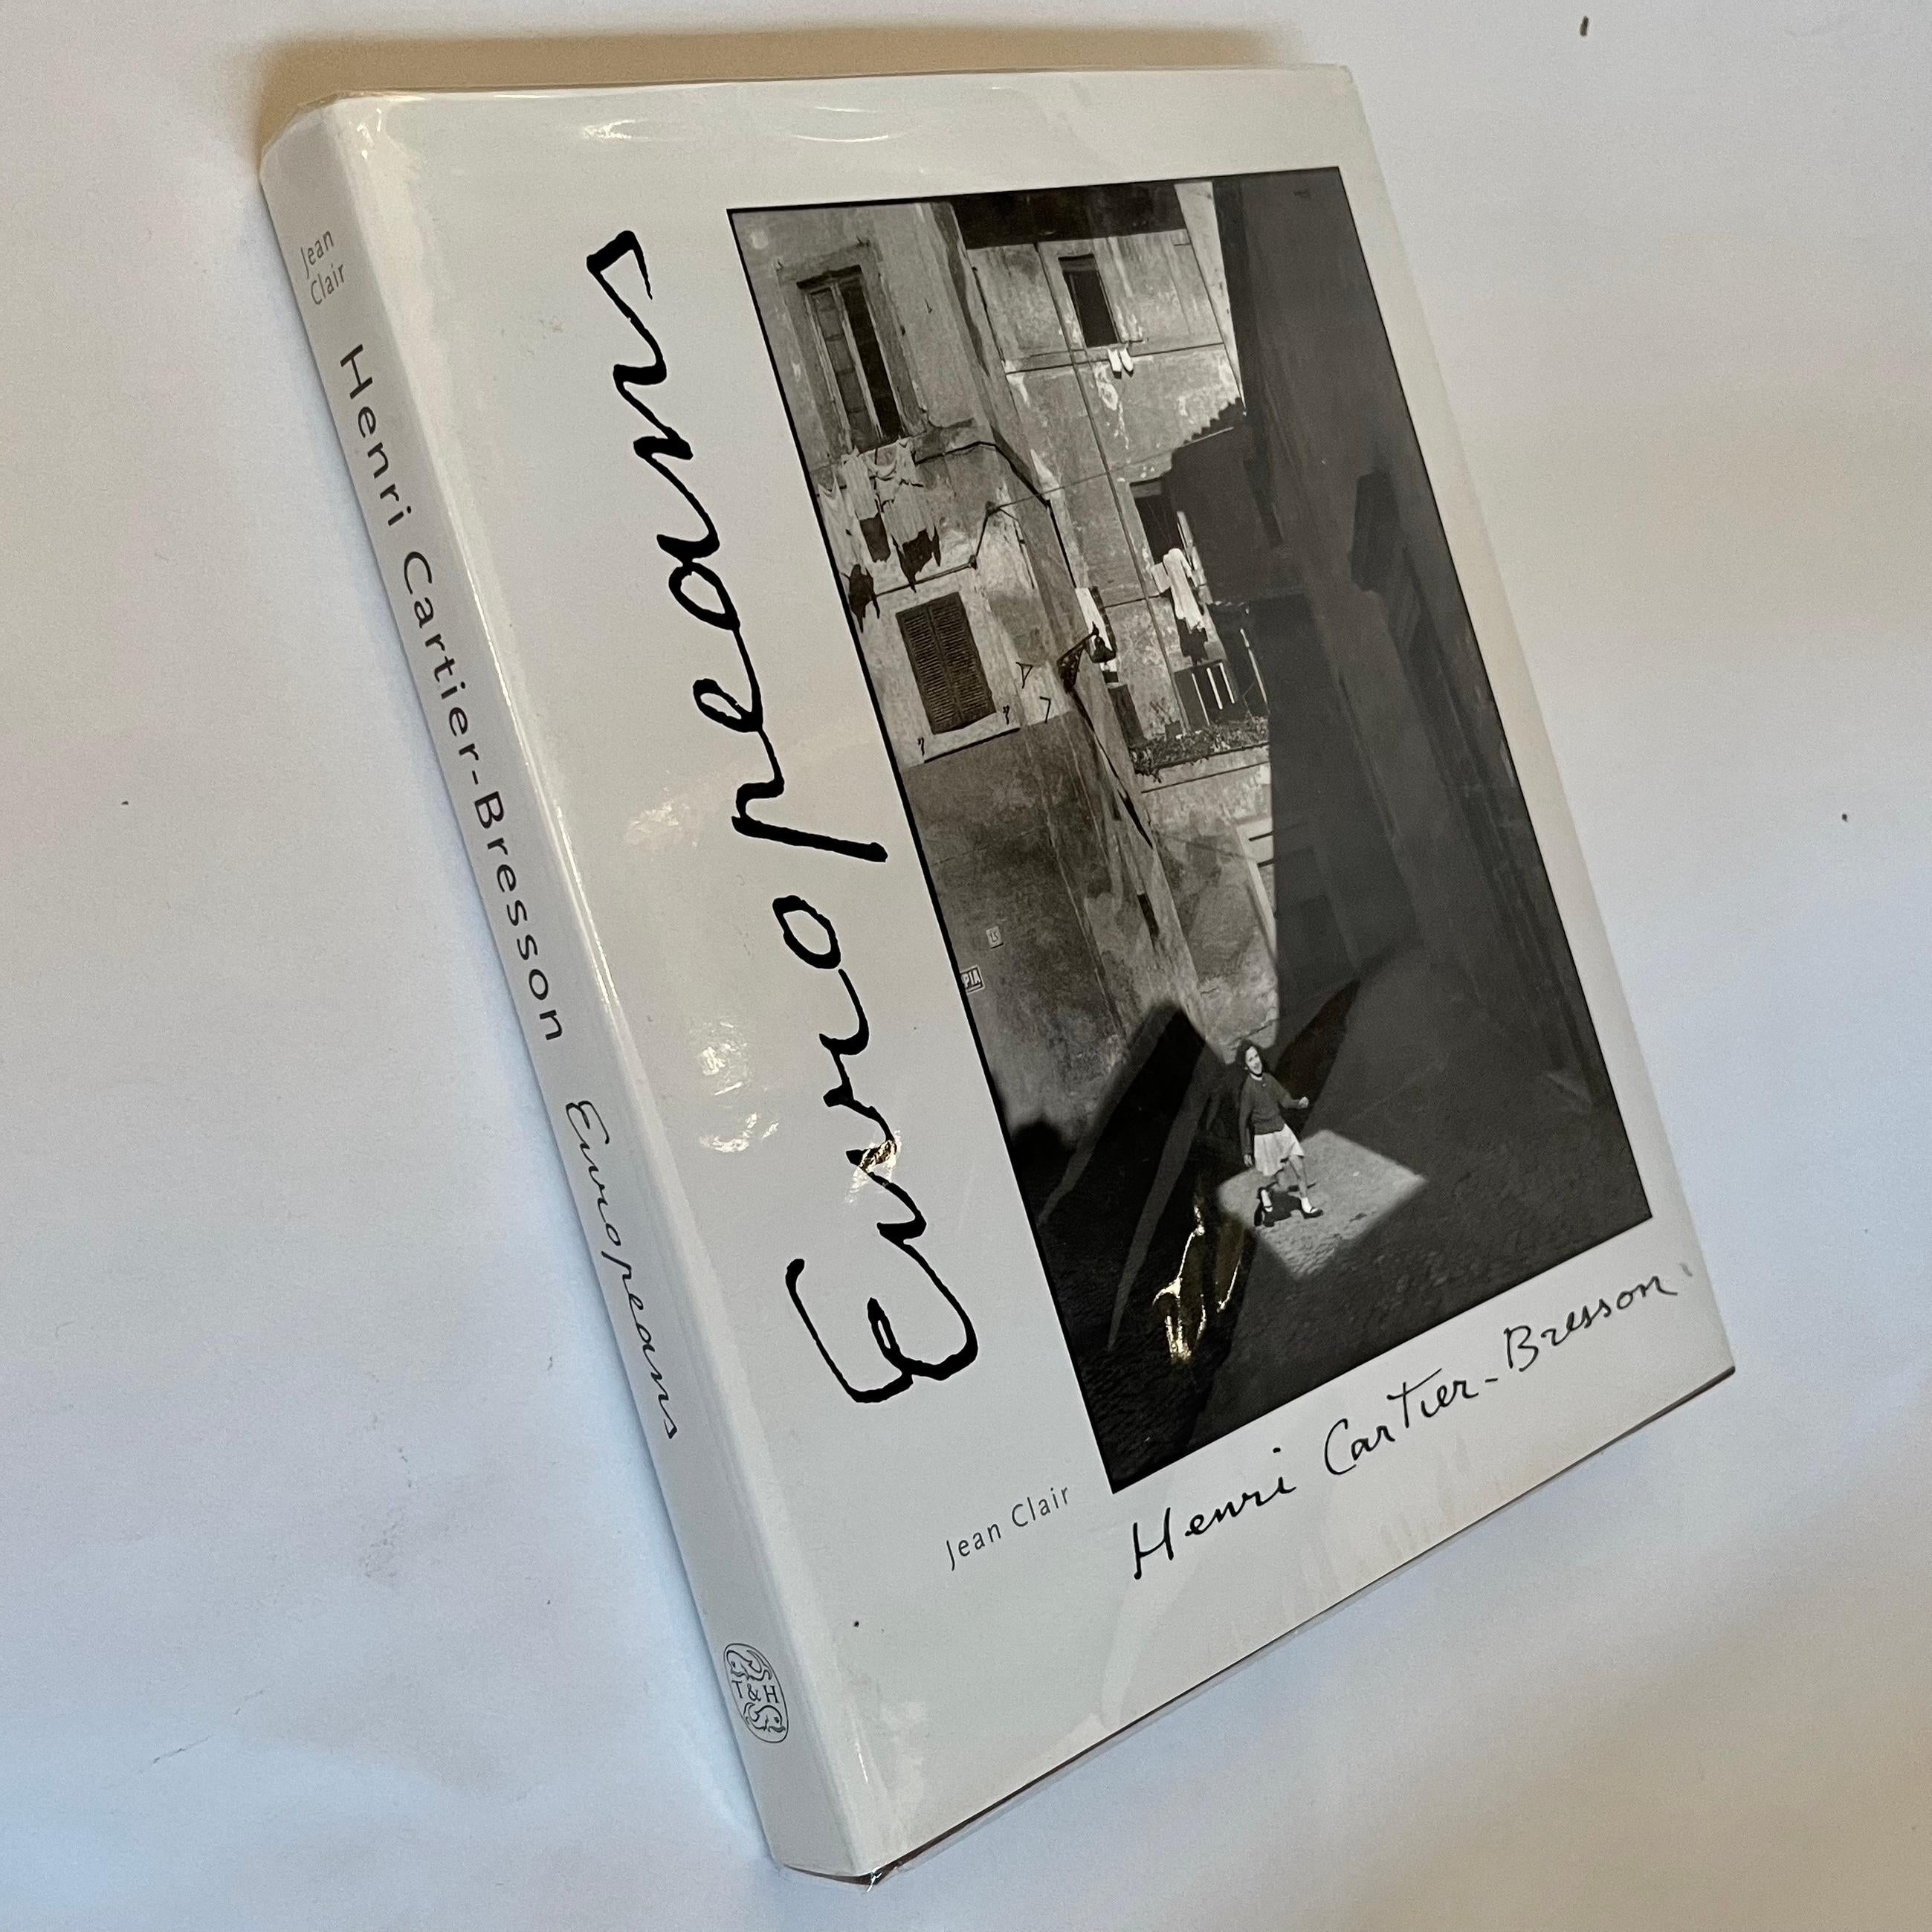 Henri Cartier-Bresson: The Europeans - Jean Clair, Thames & Hudson, London, 1998 For Sale 7